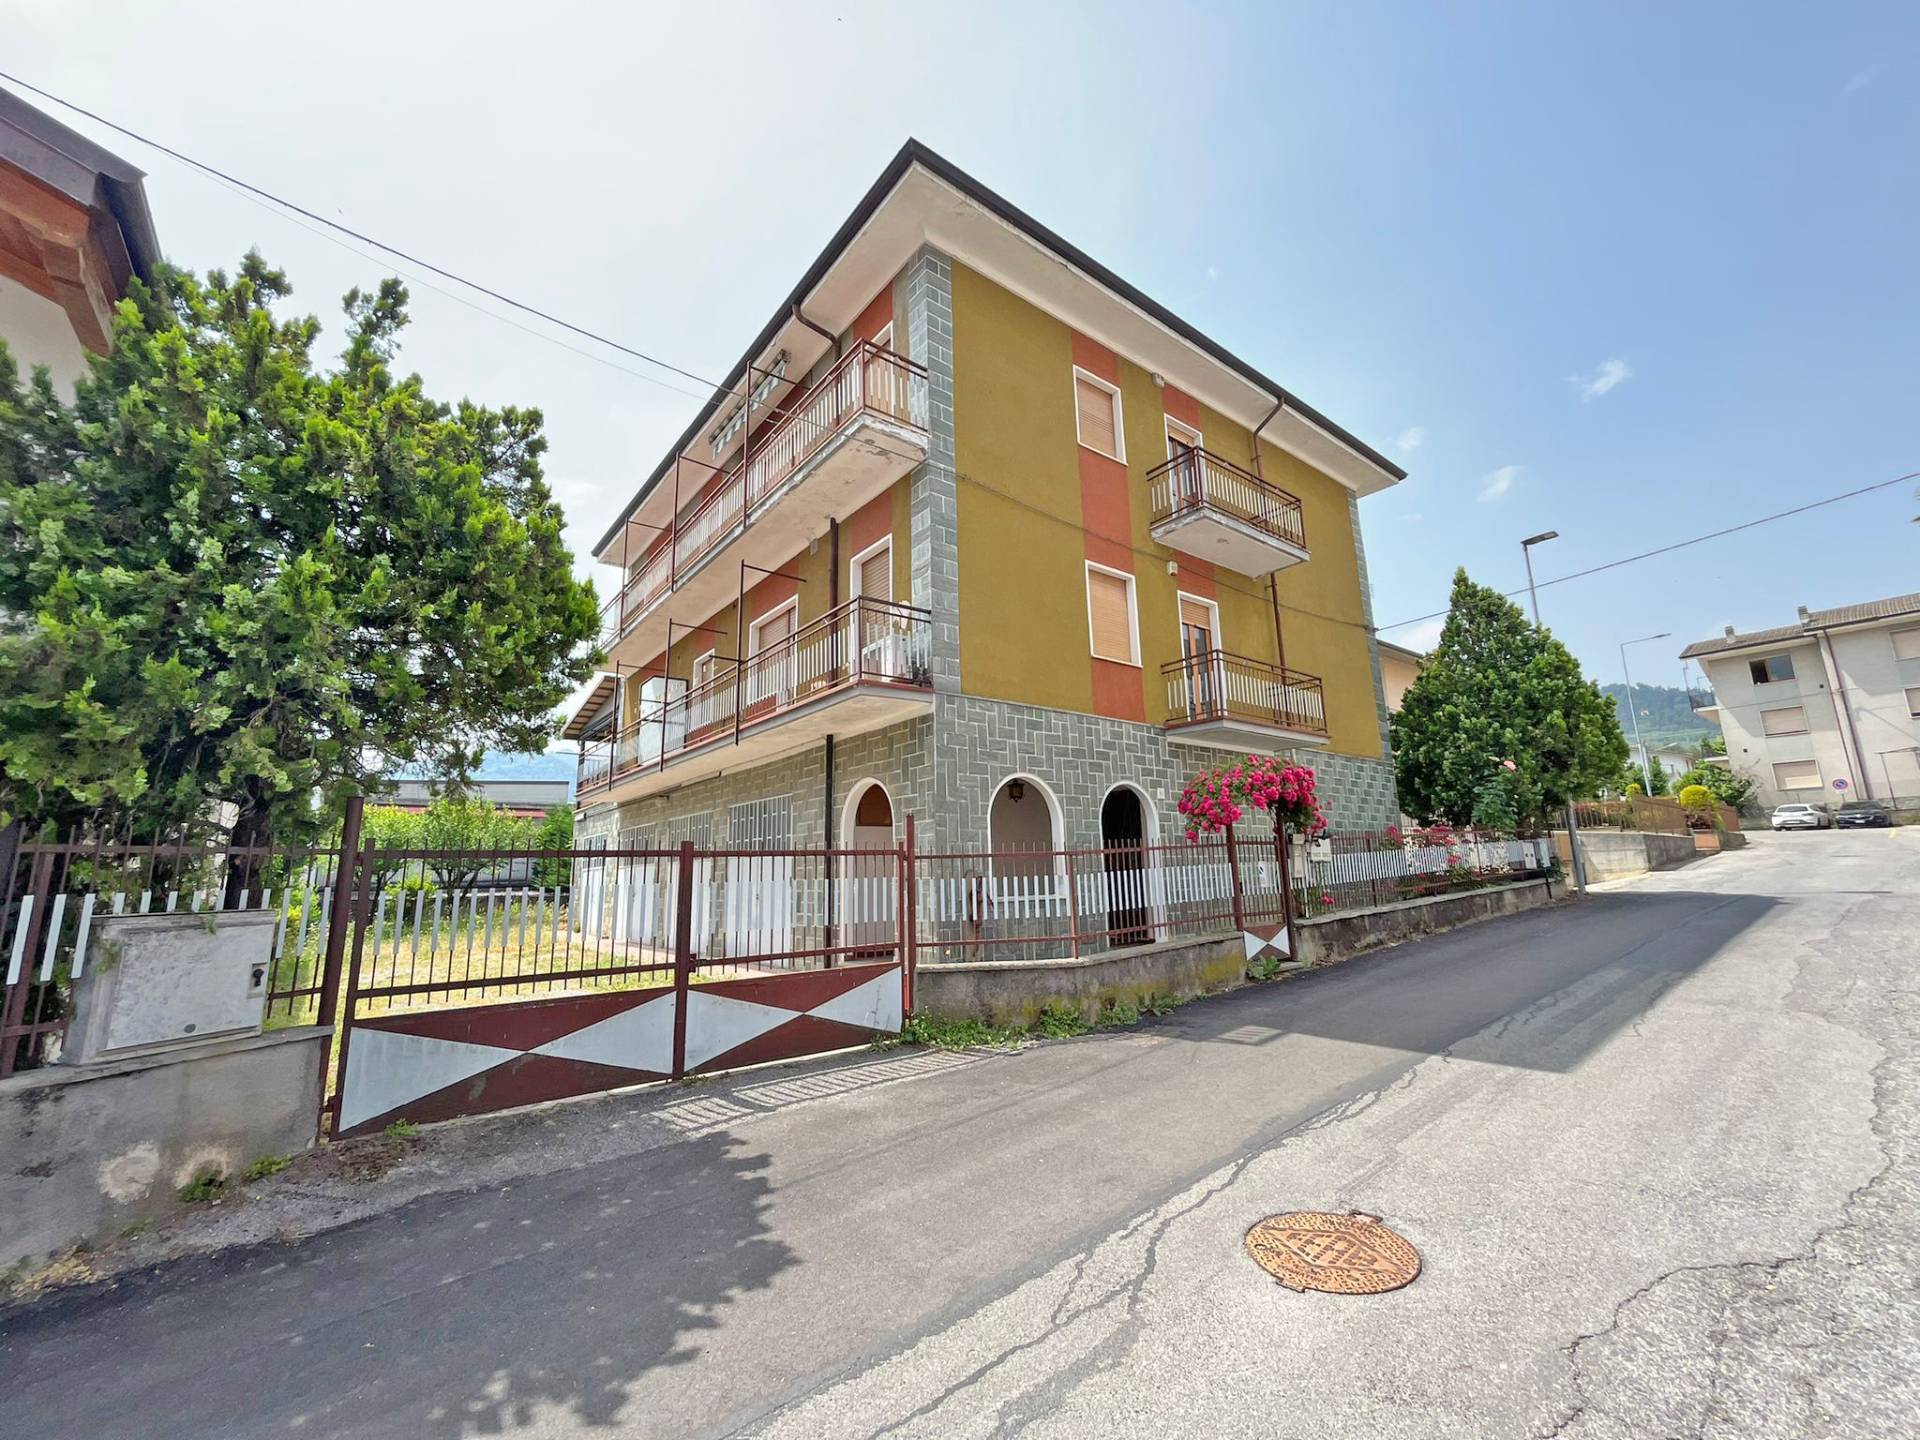 Appartamento in vendita a Villanova Mondovì, 5 locali, zona Località: Centro, prezzo € 105.000 | CambioCasa.it